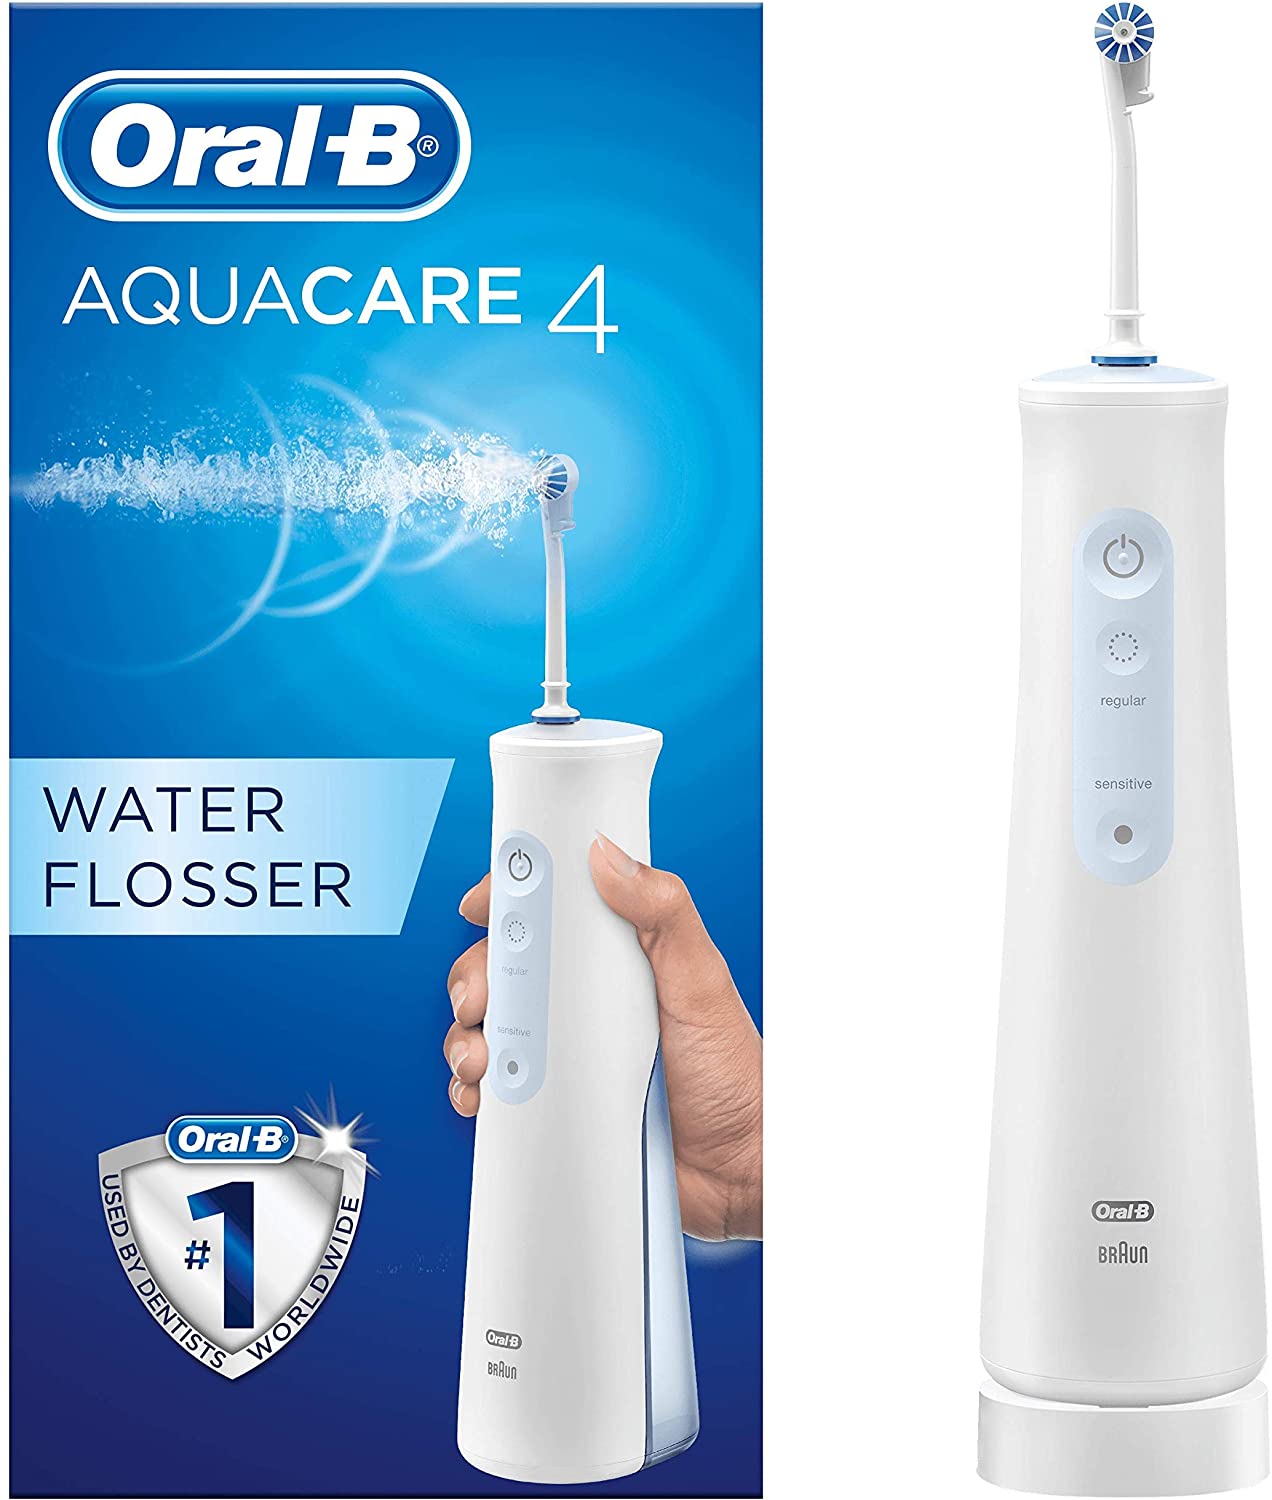 tam nuoc oral b aquacare 4